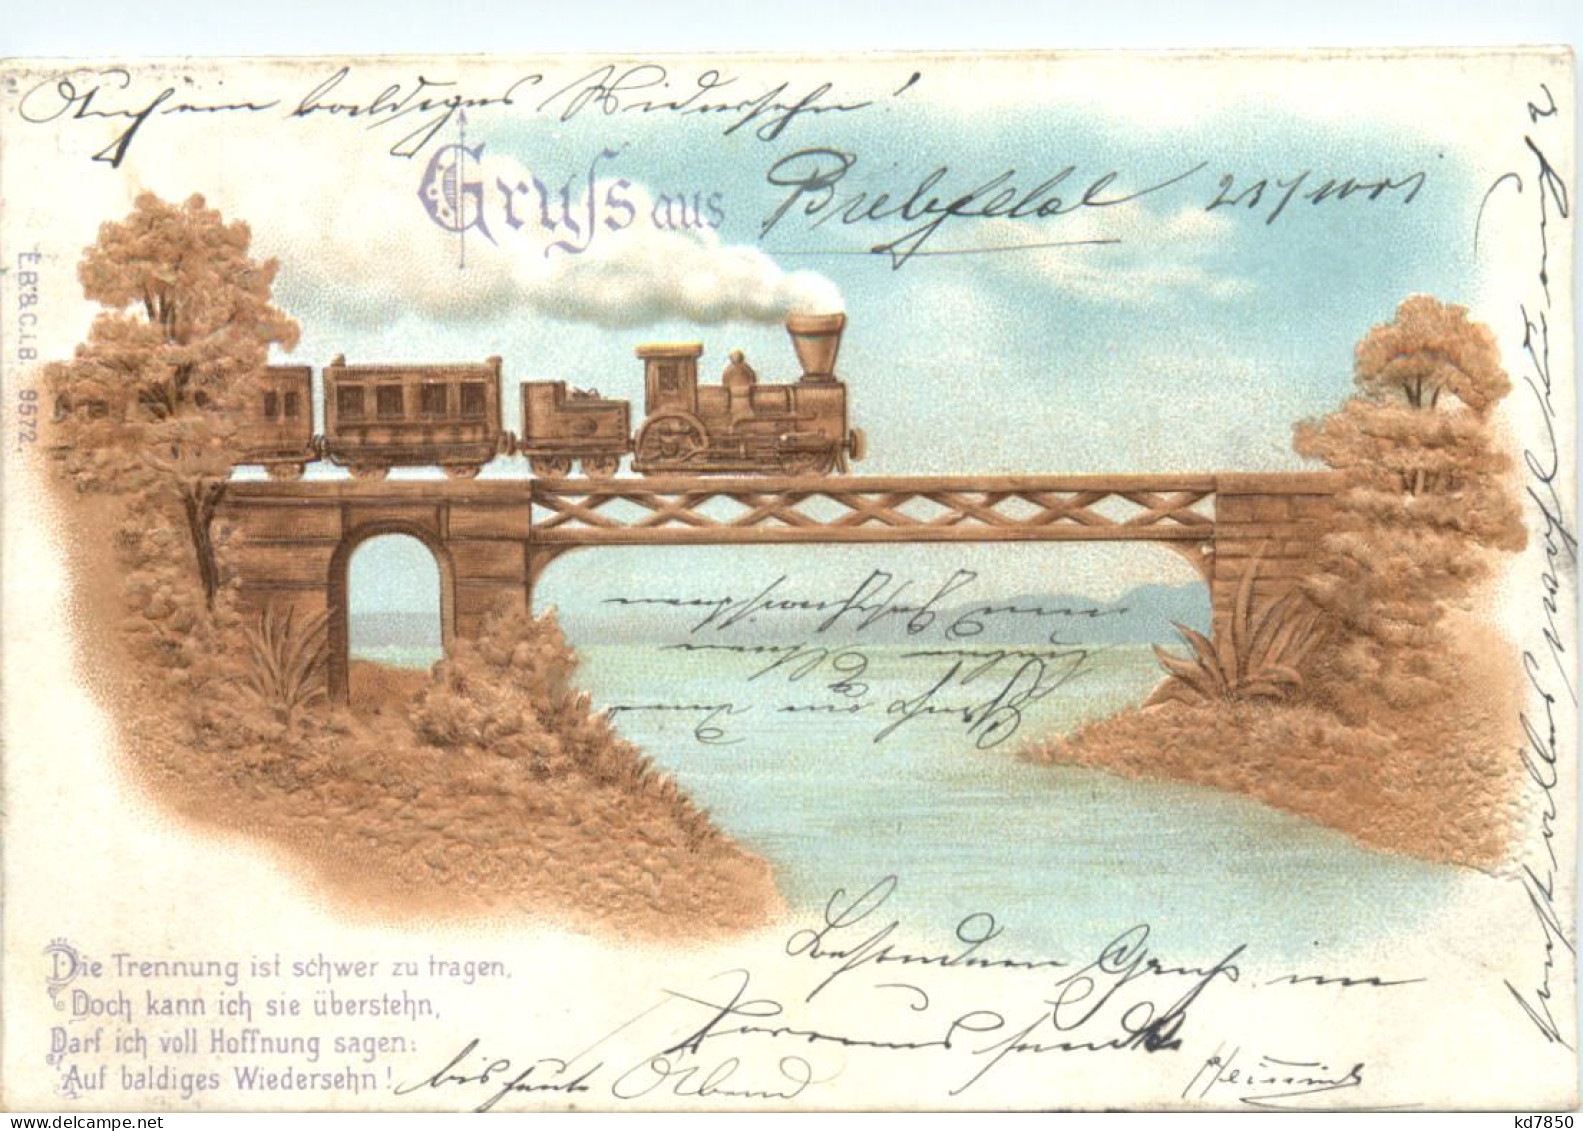 Gruss Aus - Prägekarte Eisenbahn - Gruss Aus.../ Gruesse Aus...